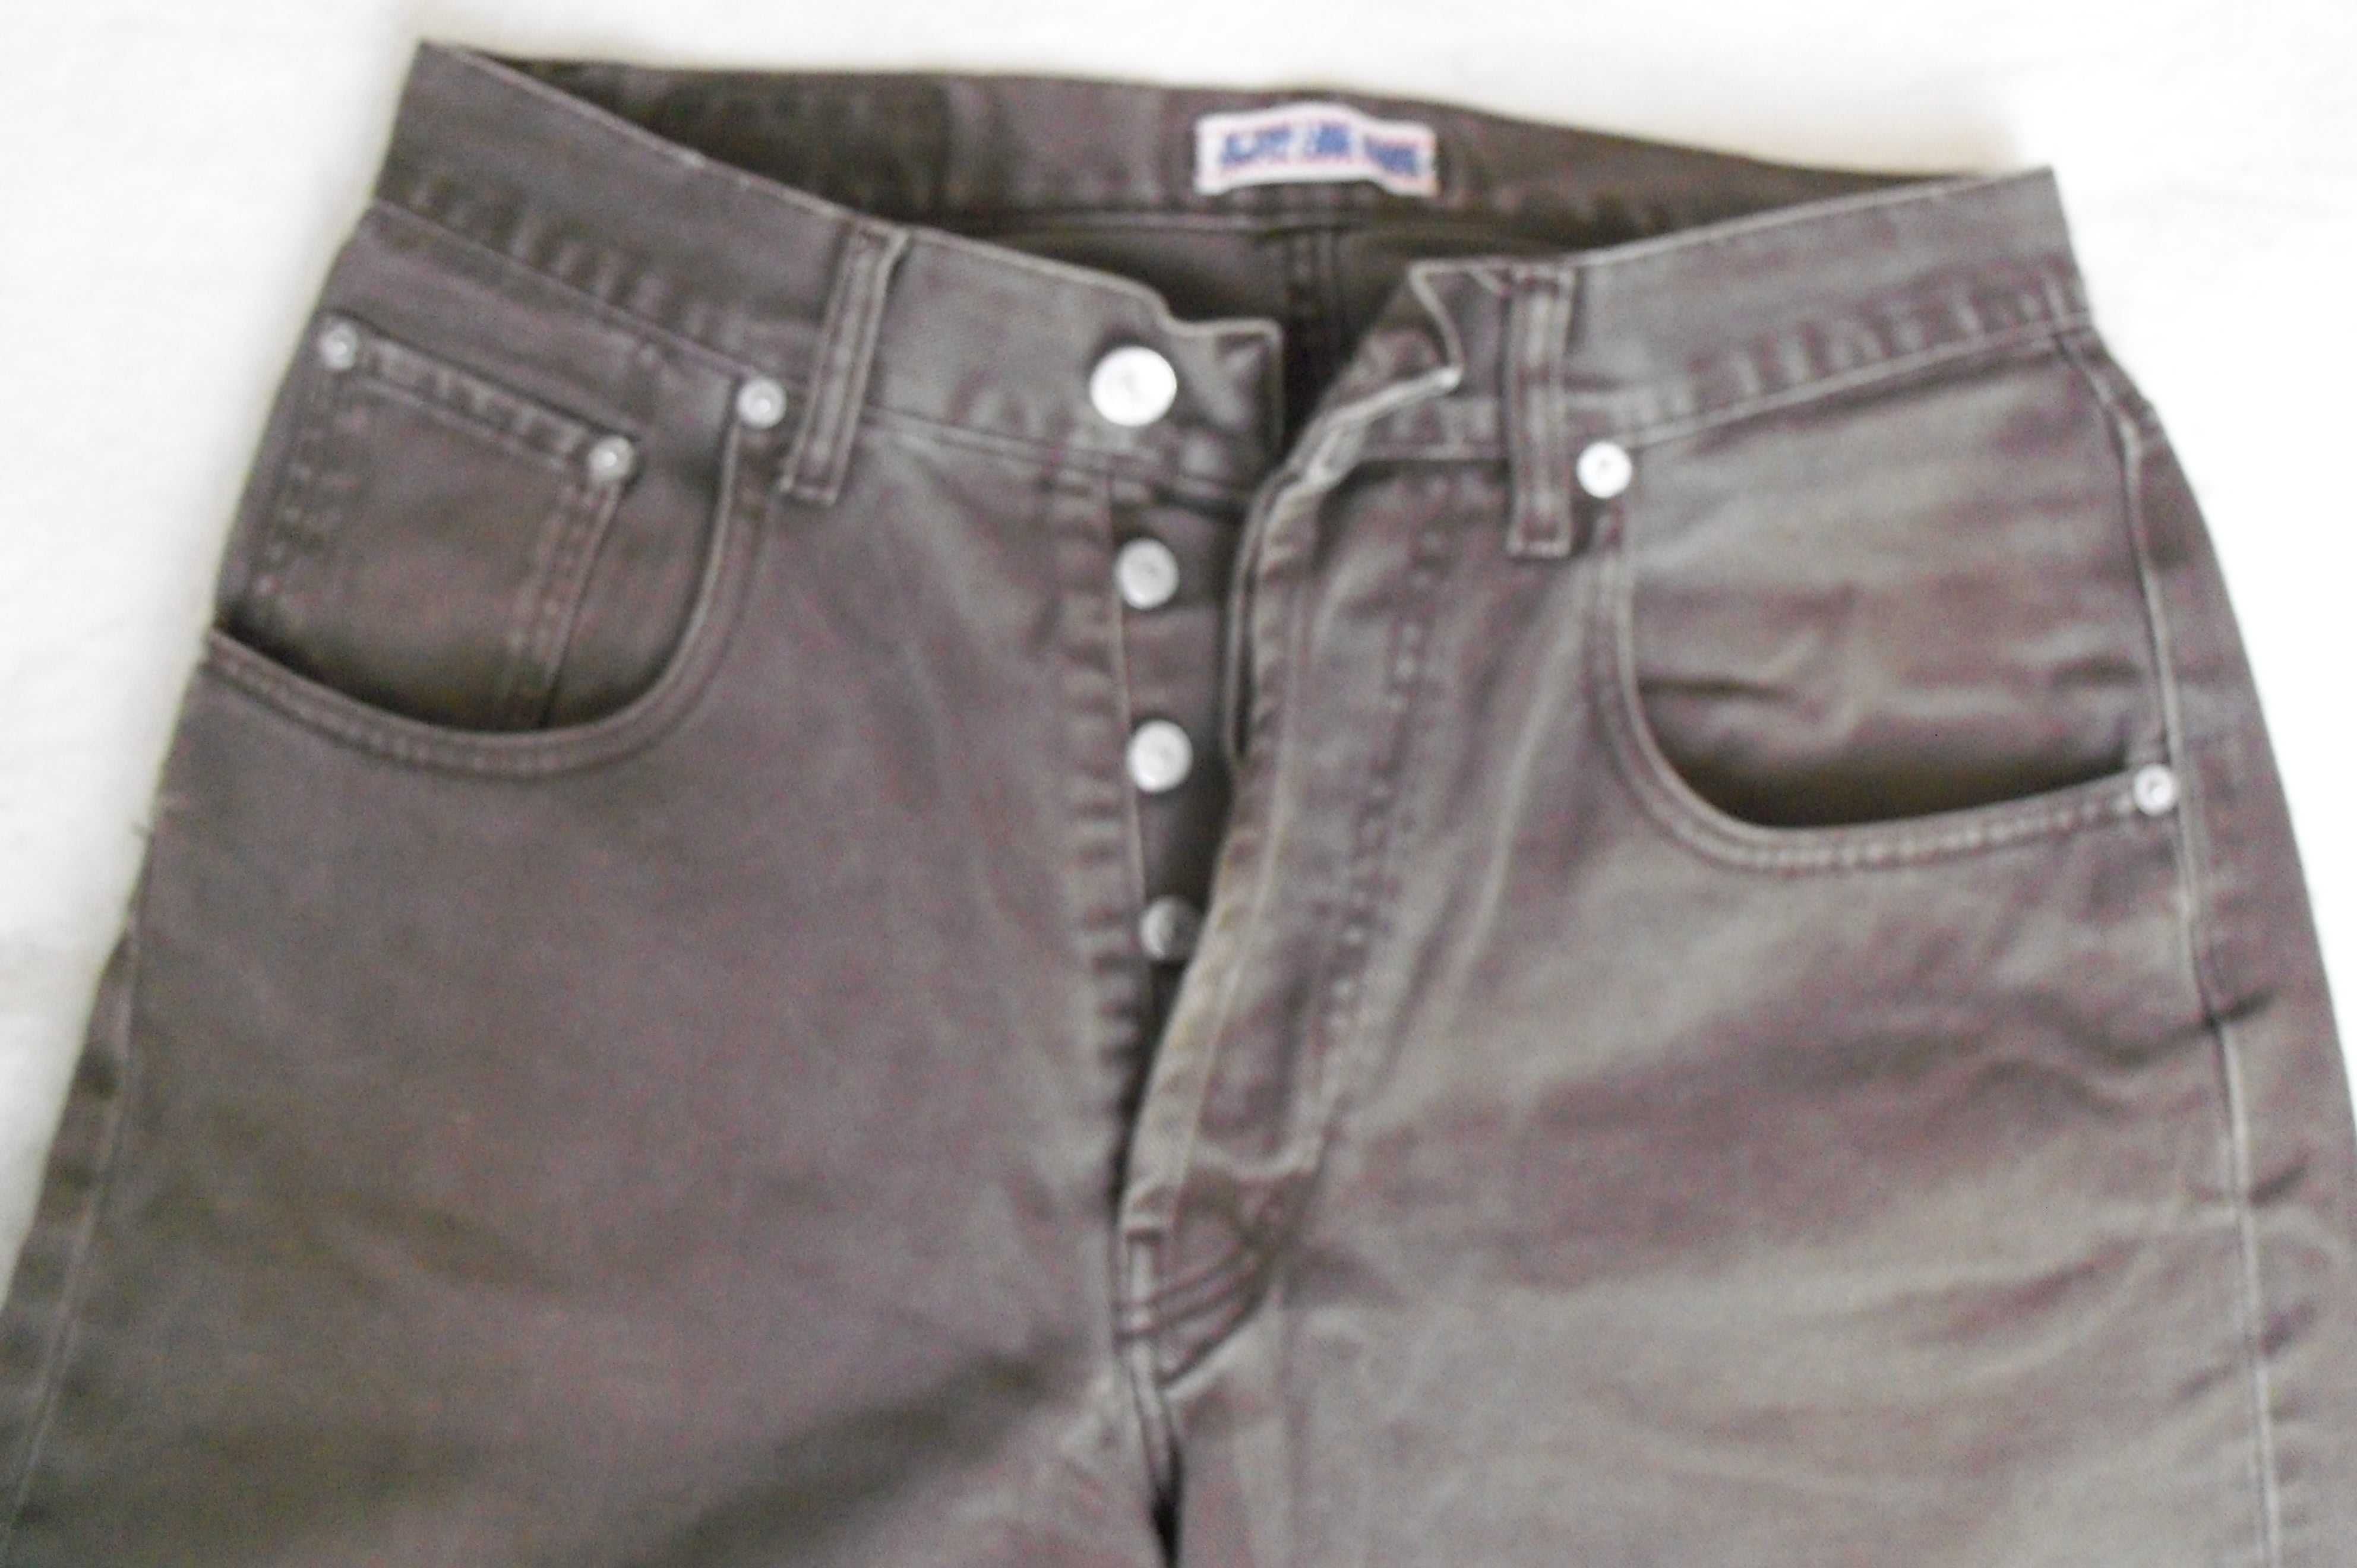 CHIPIE spodnie jeansowe,męskie, W32 L34,rozm.M 170-176 bawełna